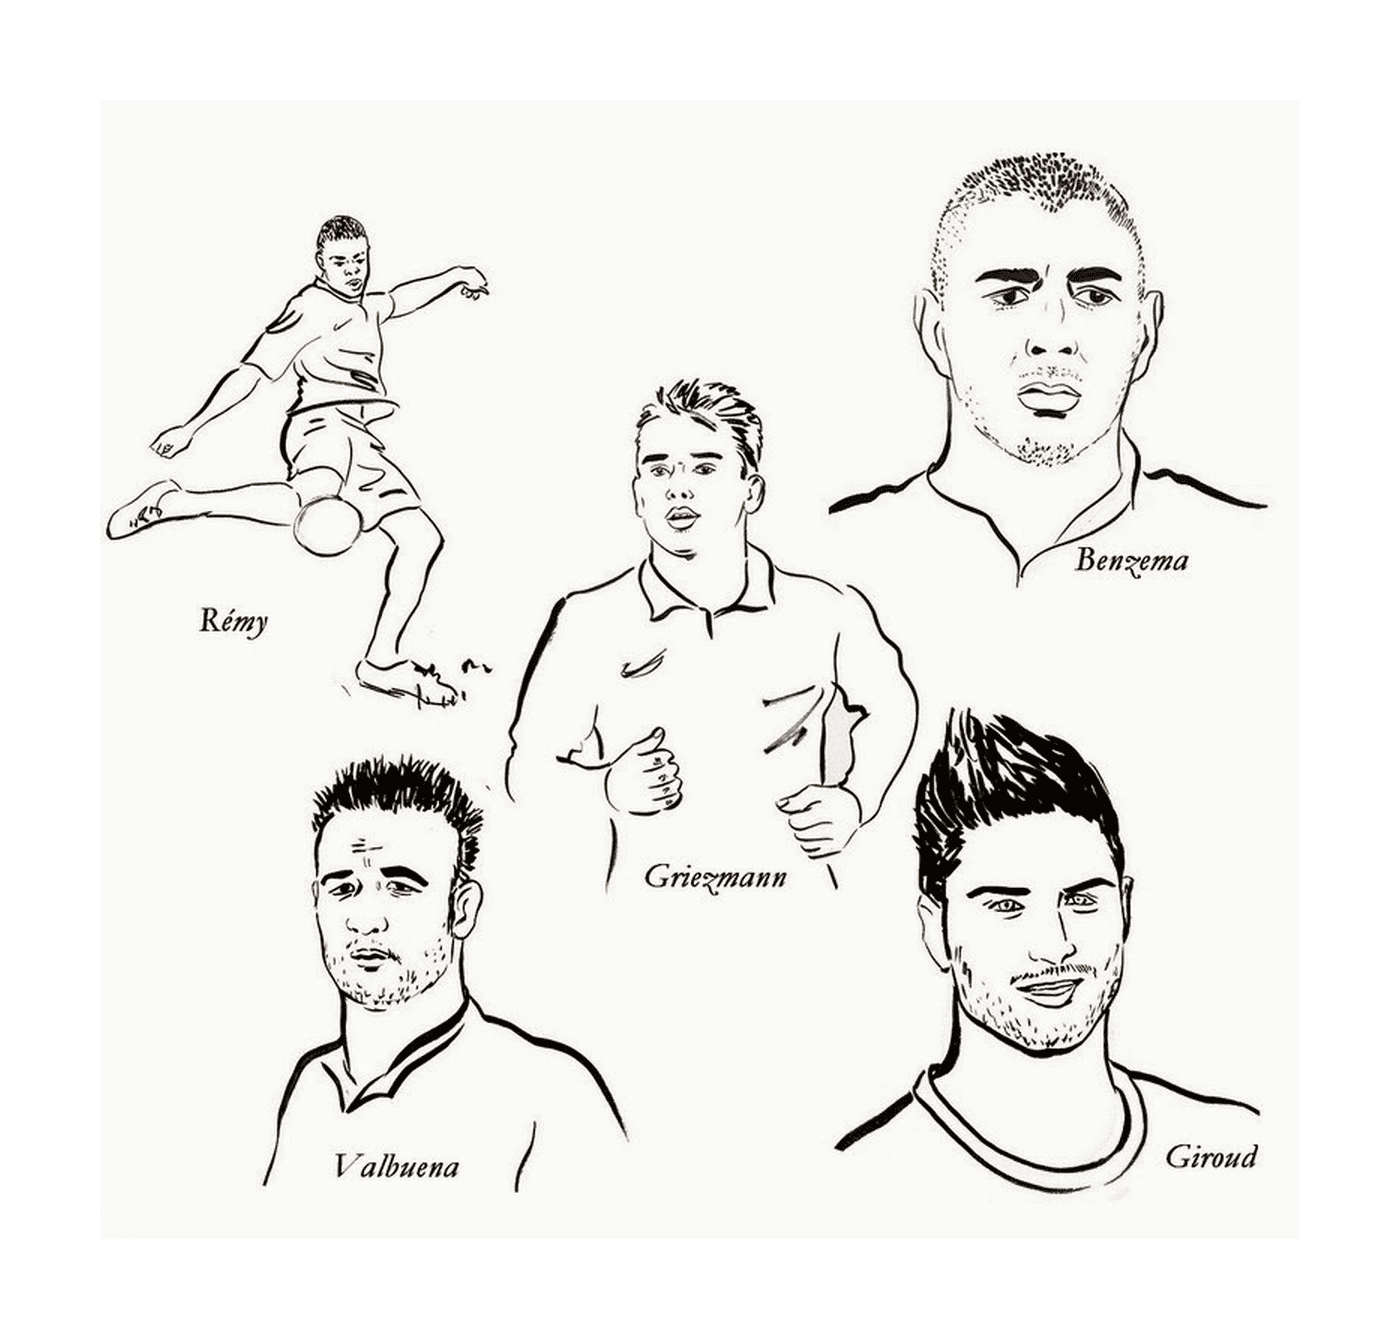  卡里姆·本泽马、格里兹曼和其他足球运动员 